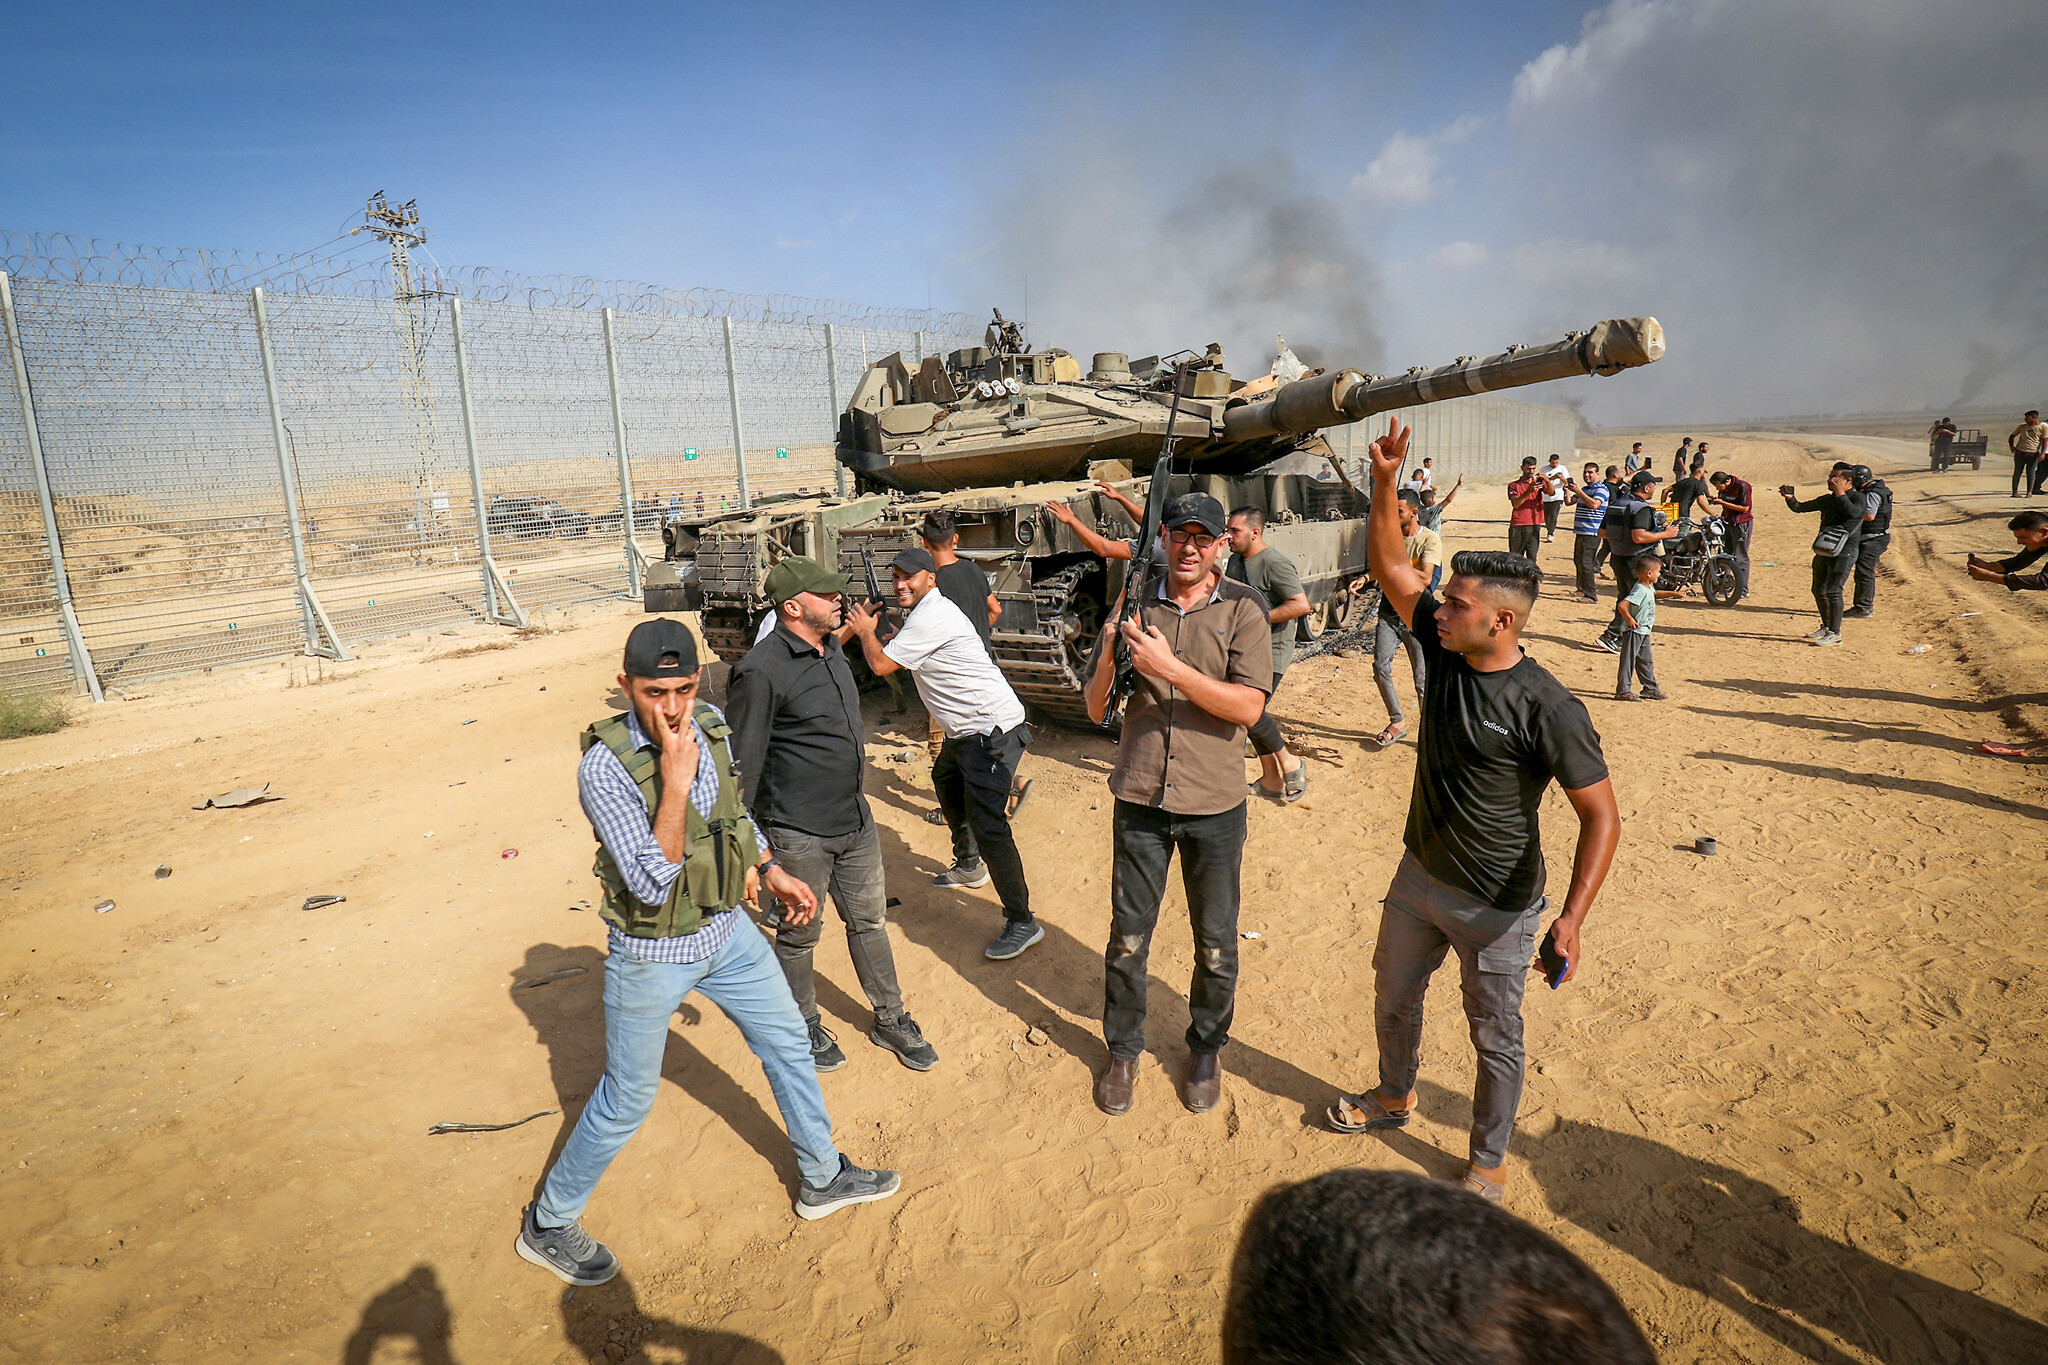 Νότιο Ισραήλ: Εικόνες βγαλμένες από ταινία θρίλερ – Καμένα αυτοκίνητα και πτώματα στους δρόμους